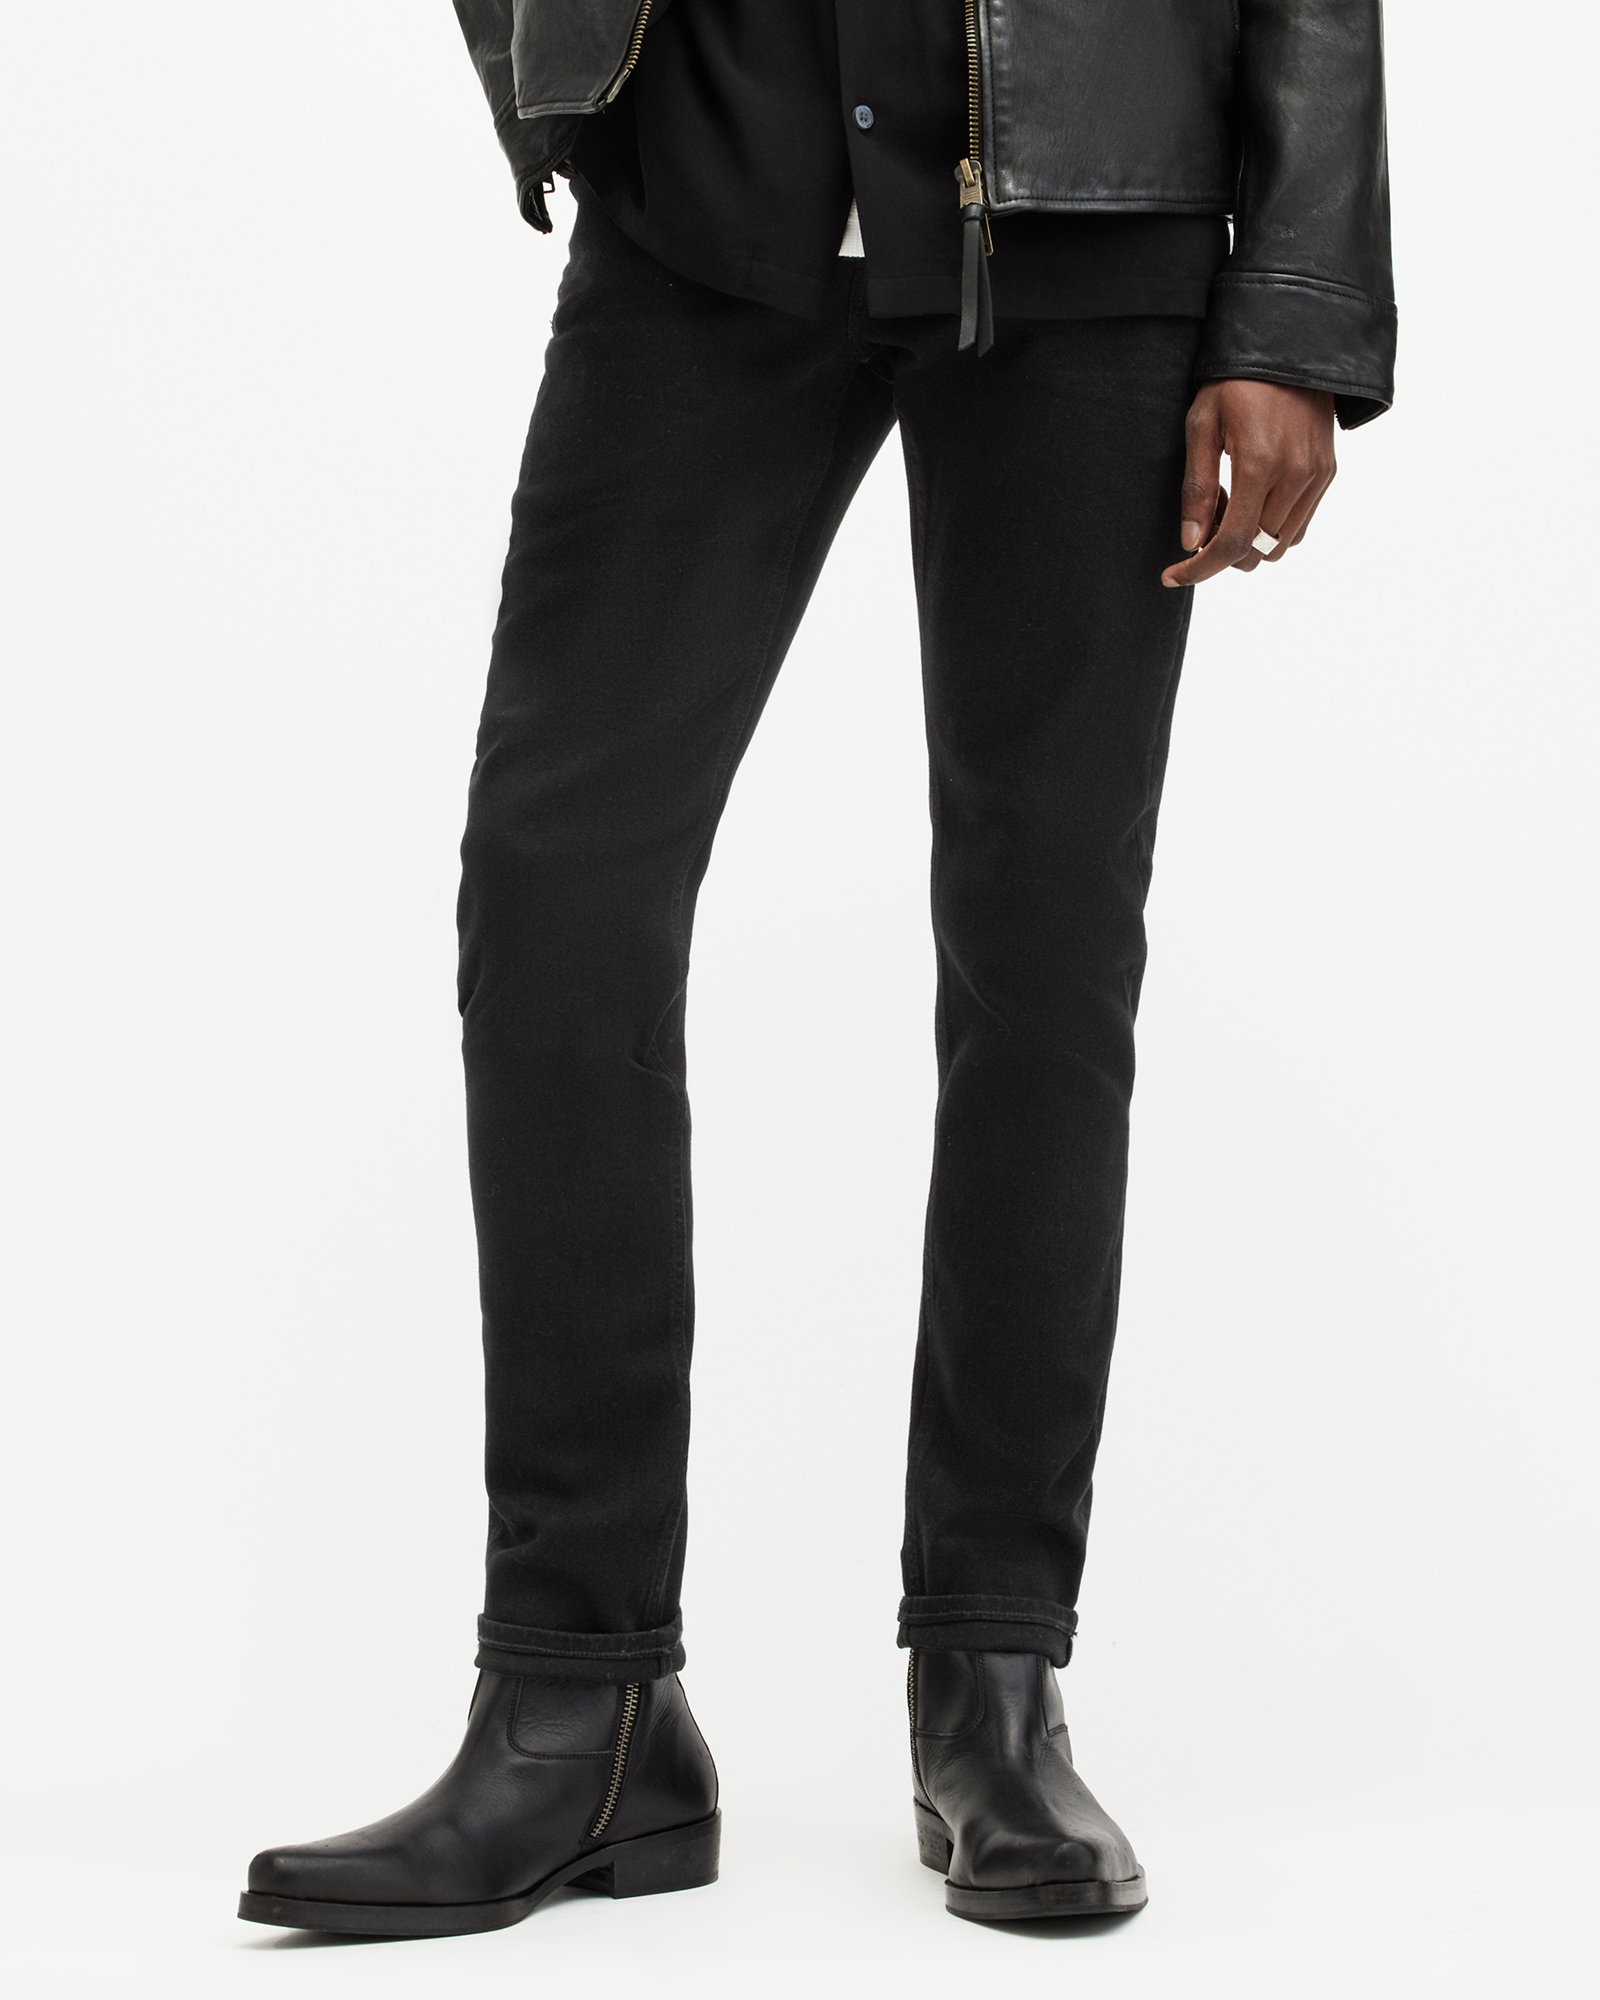 AllSaints Men's Cotton Traditional Rex Slim Jeans, Black, Size: 36/L32